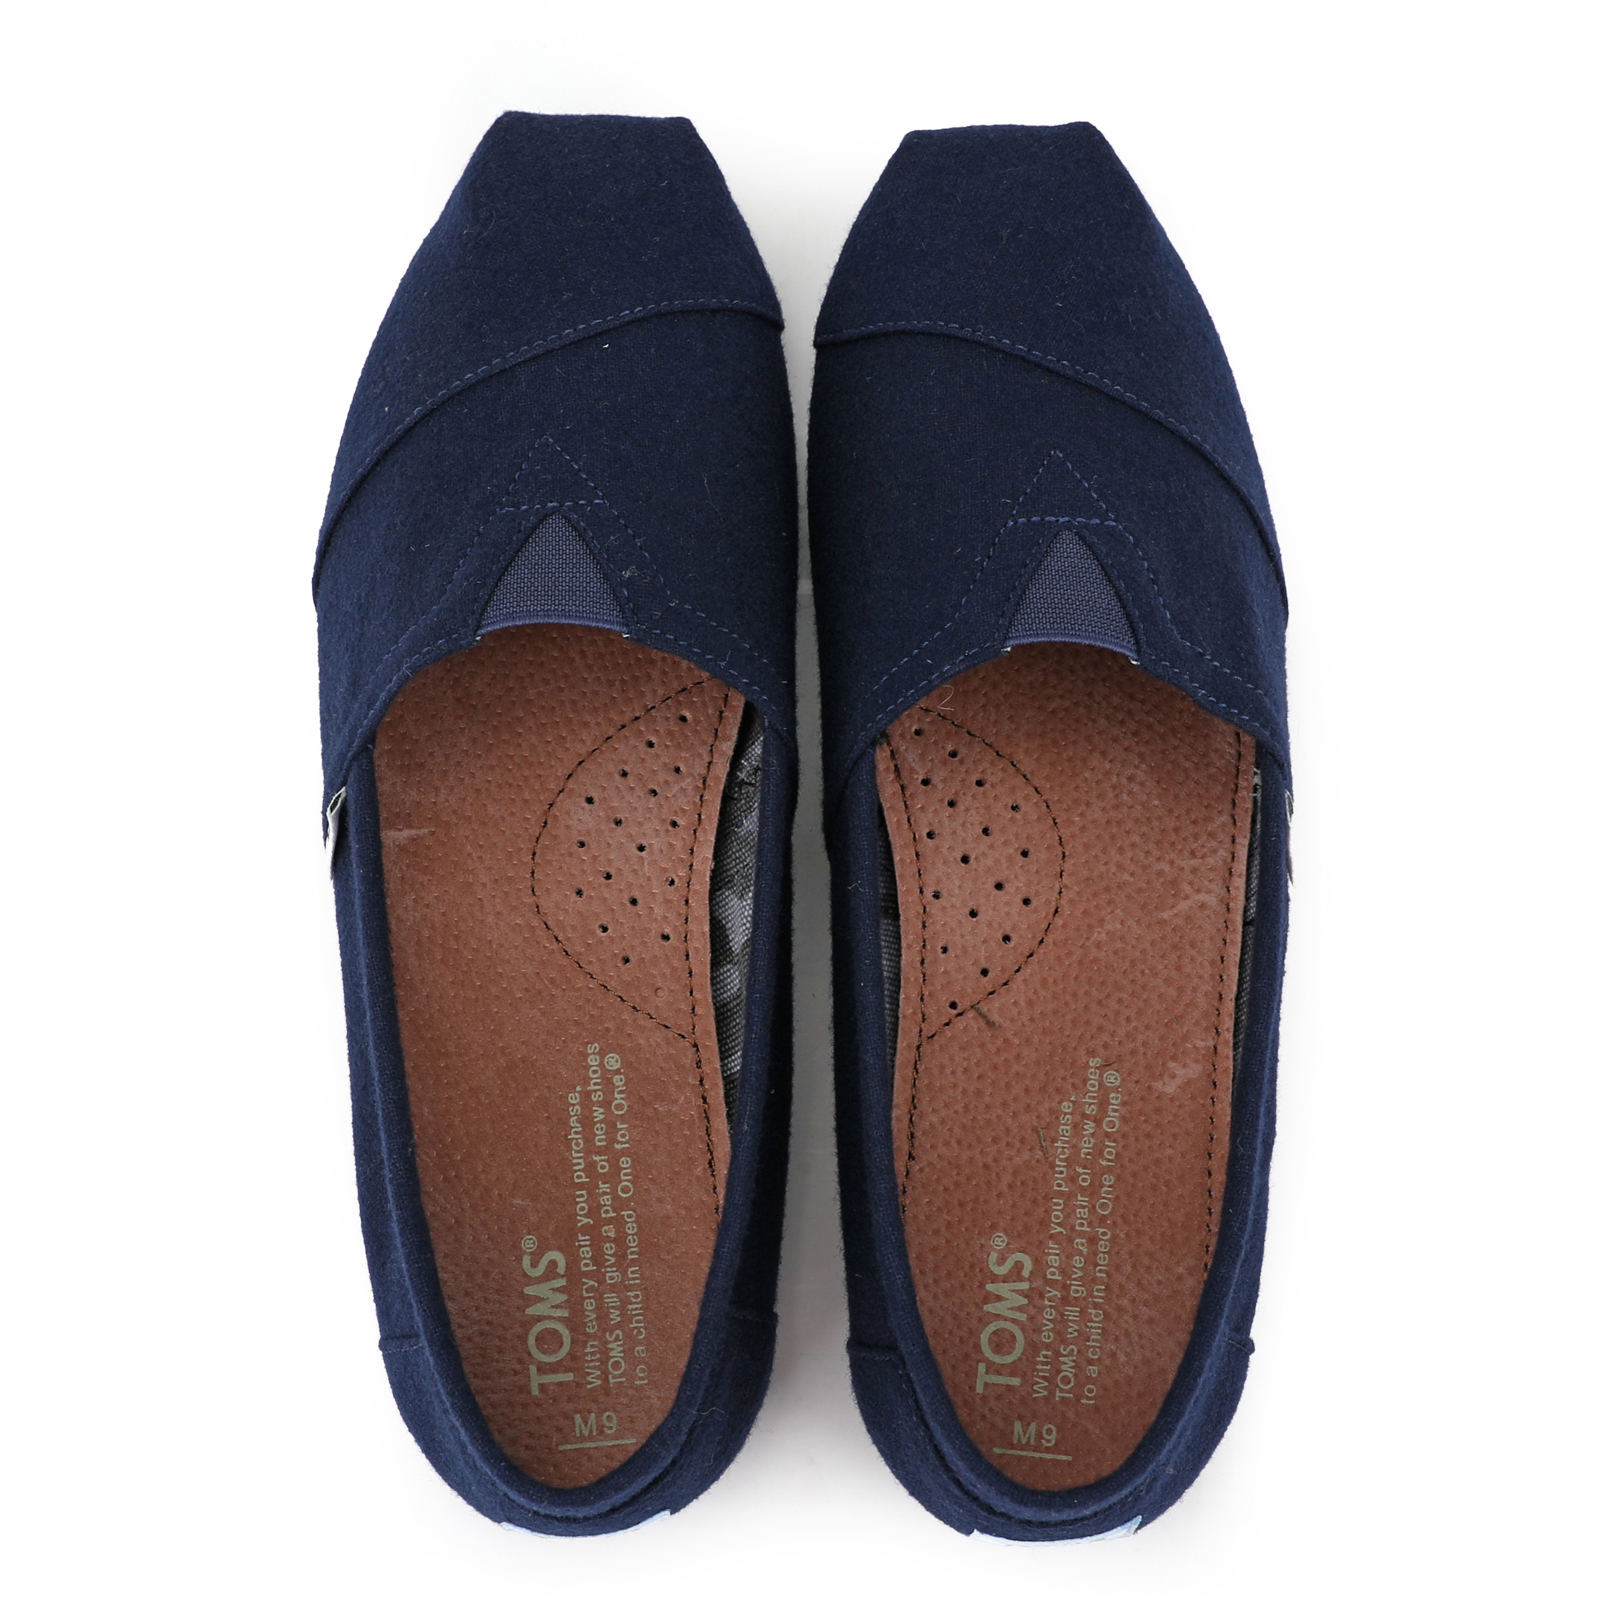 台灣Toms新款藍色法蘭絨男鞋 - 點擊圖片關閉